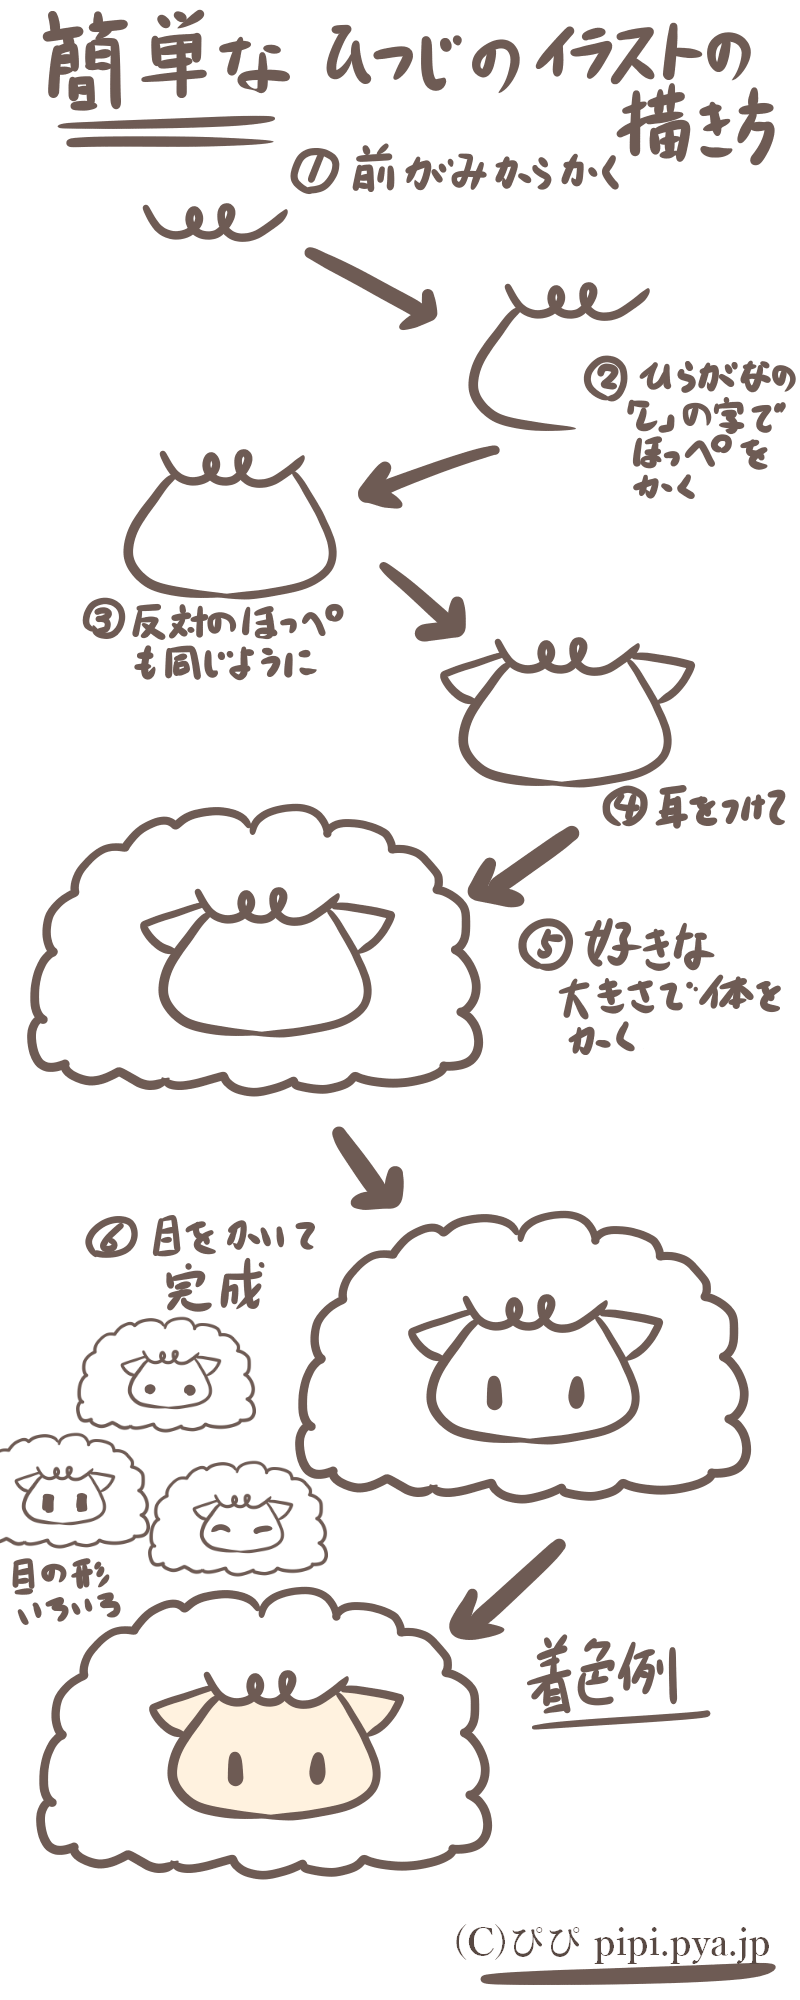 可愛い羊の描き方